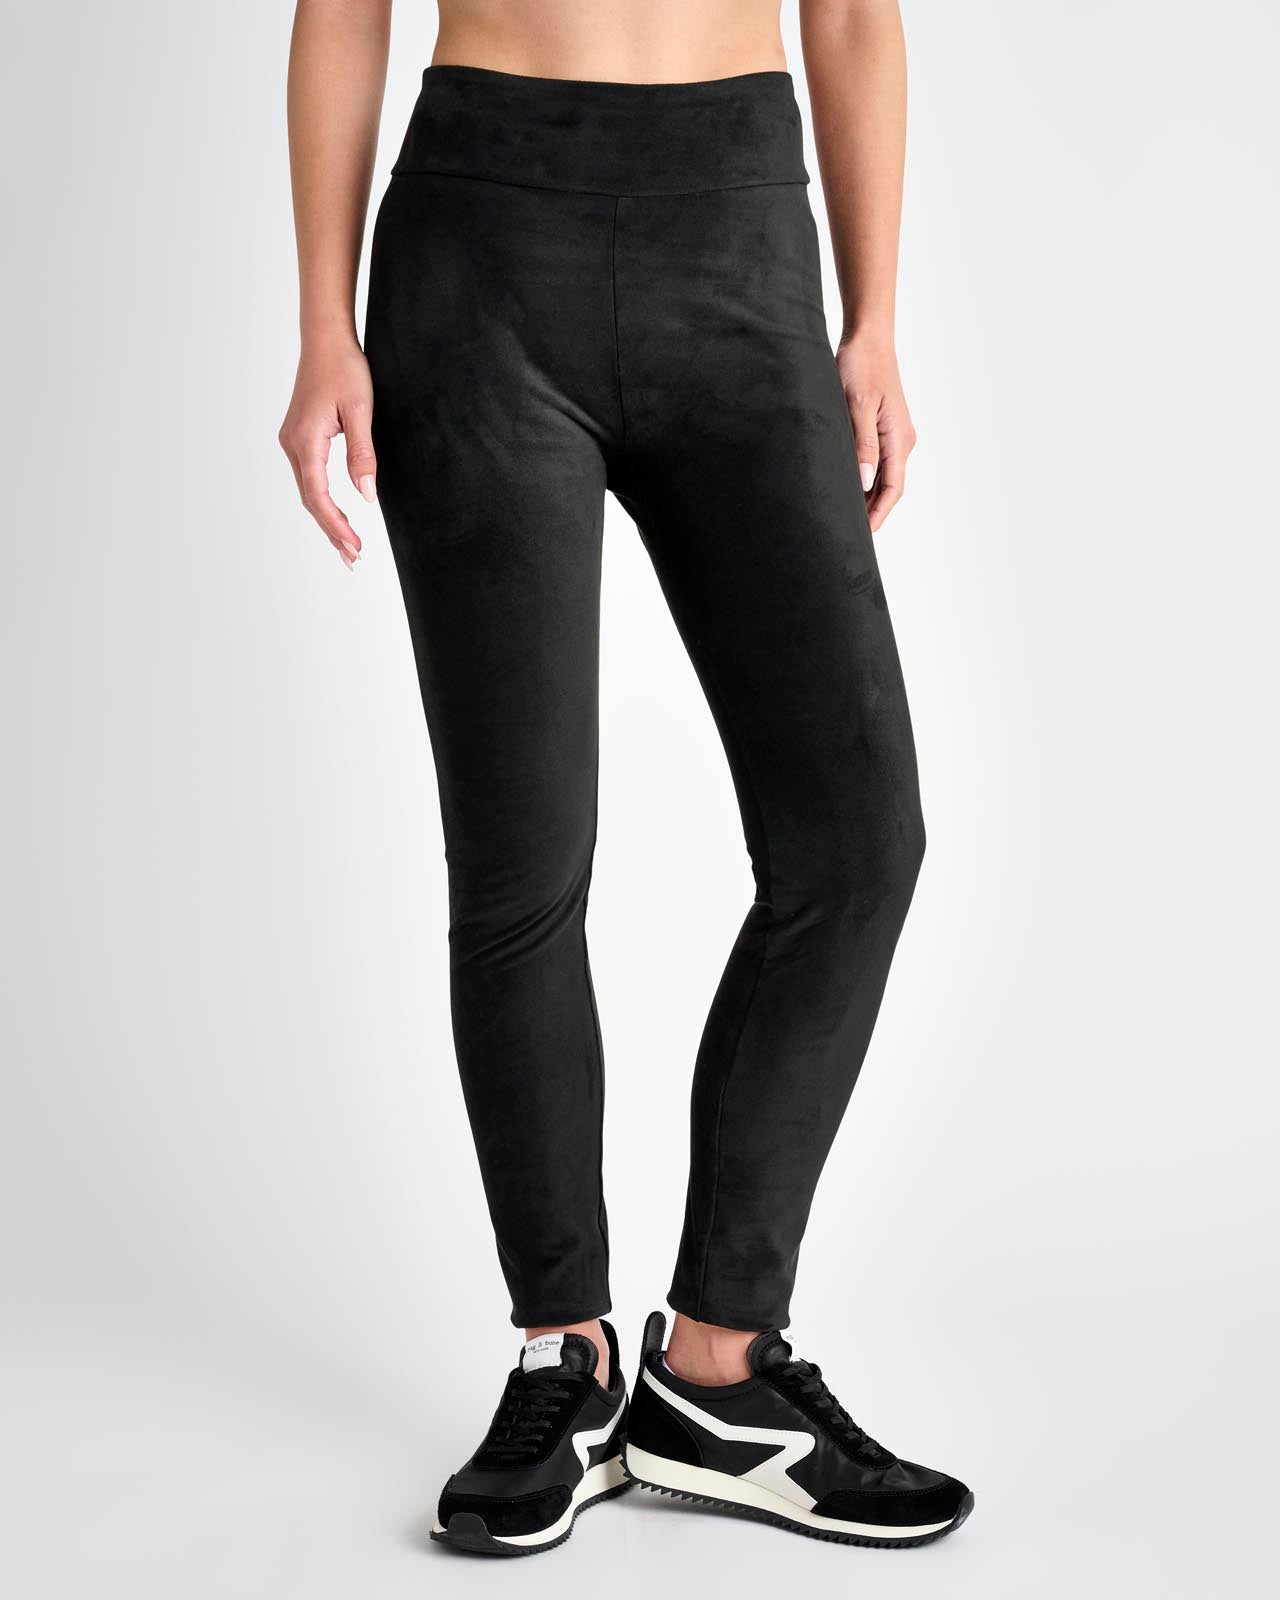 SPLENDID Black Stretch Cotton-Blend Leggings Size S NWOT – Style Exchange  Boutique PGH